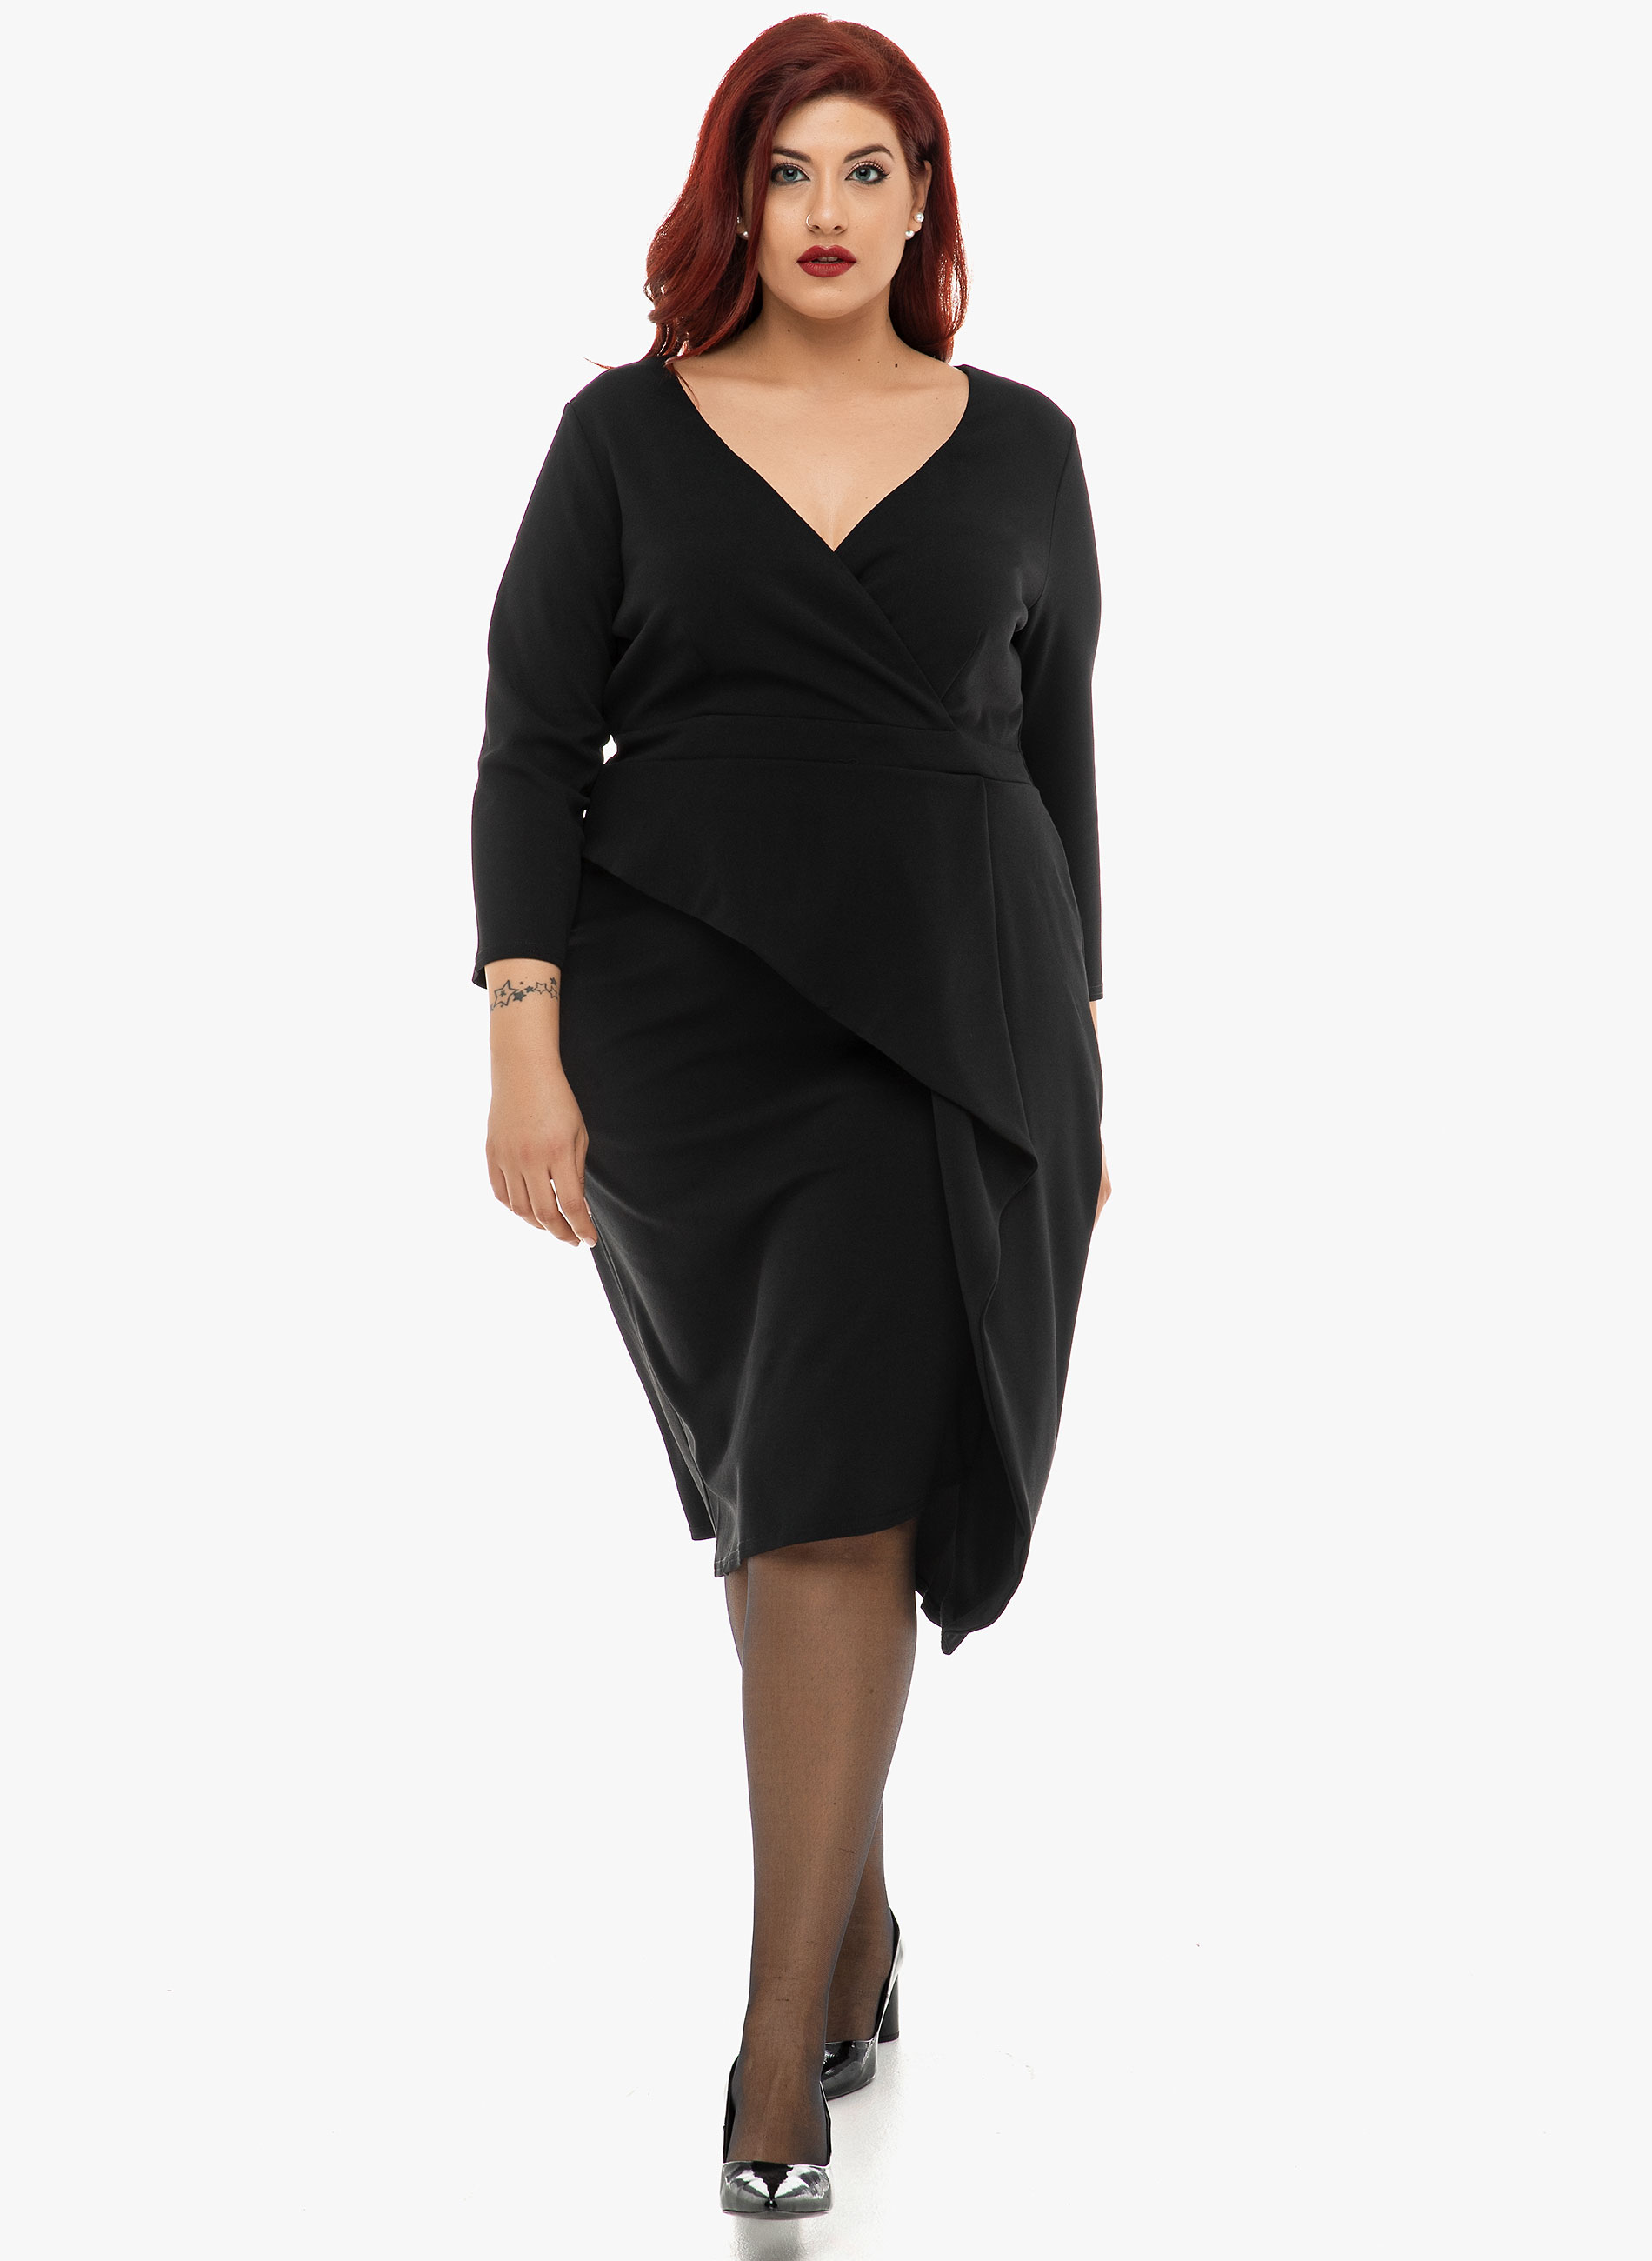 Φόρεμα μίντι μαύρο με V σταυρωτή λαιμόκοψη, μανίκια 3/4 και λεπτομέρεια έξτρα ύφασμα που πέφτει ασύμμετρο στην φούστα. Ιδανικό για πιο επίσημες εμφανίσεις! Το μήκος του είναι περίπου 106 εκατοστά. 